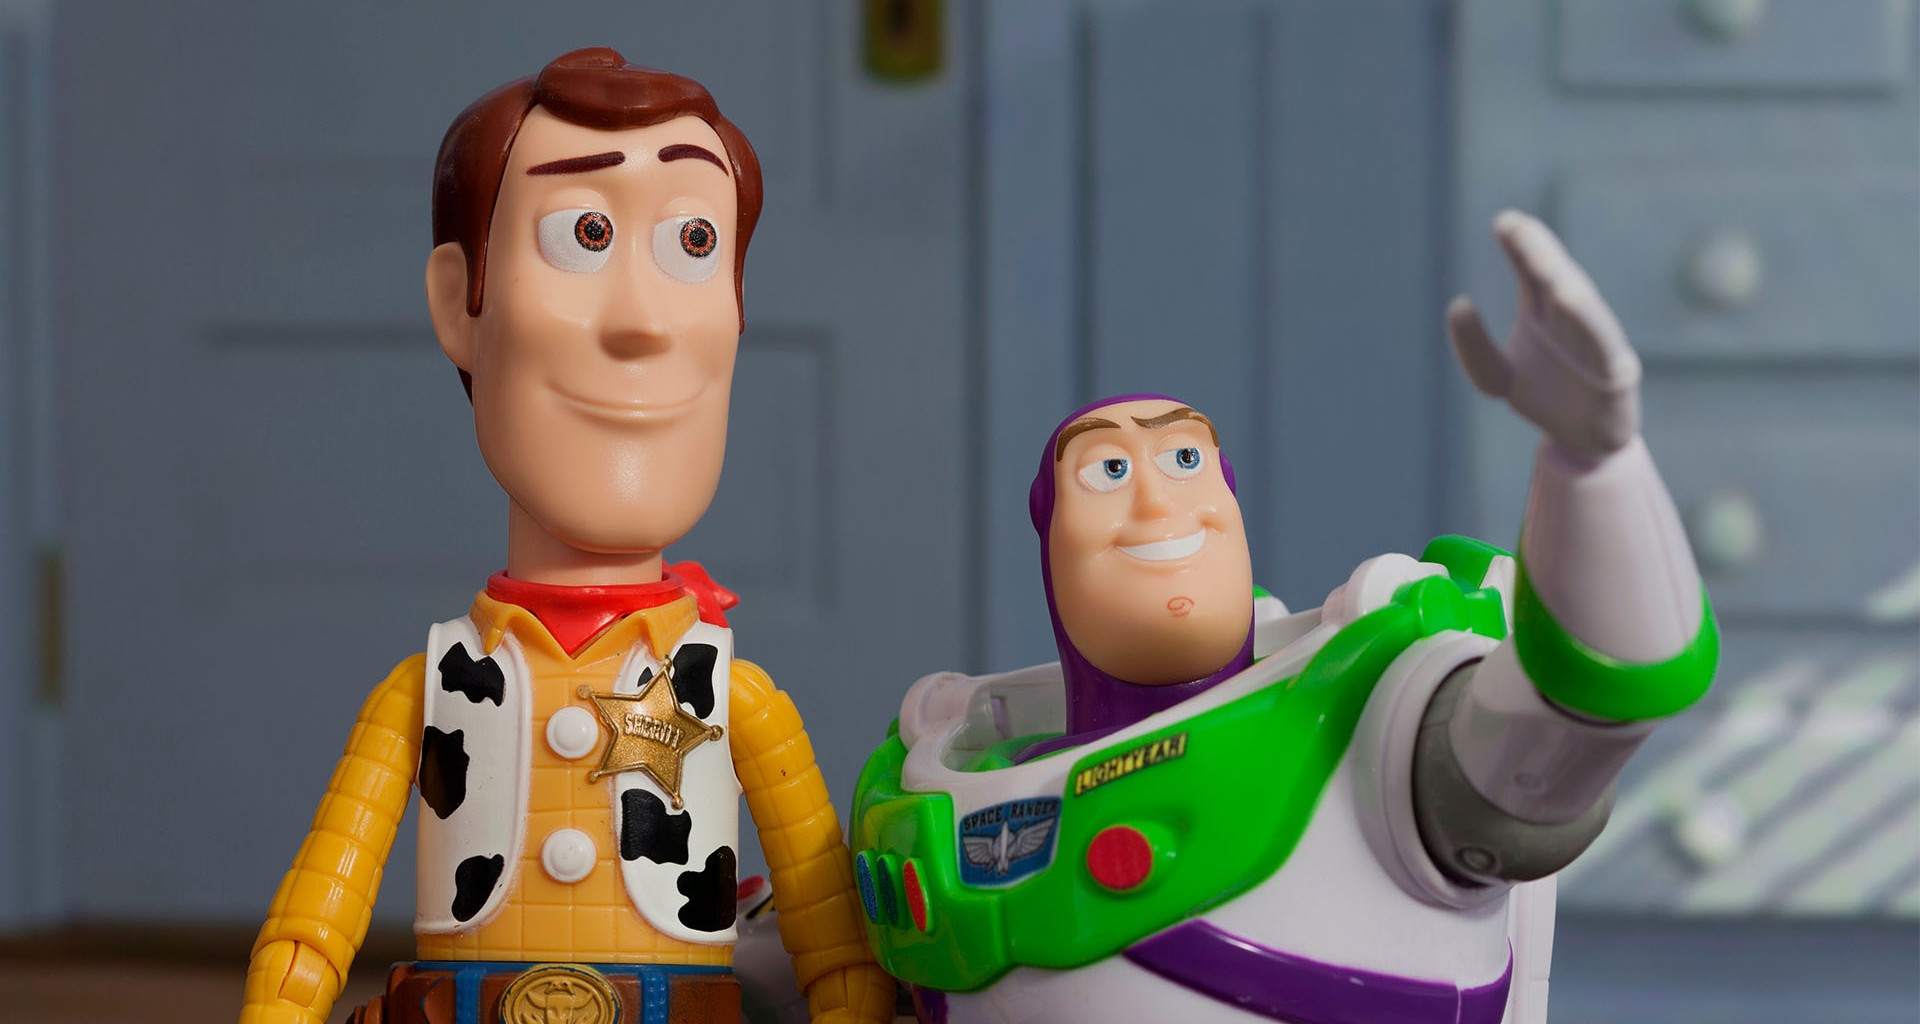 Lleva la magia de Pixar a estudiantes del Tec